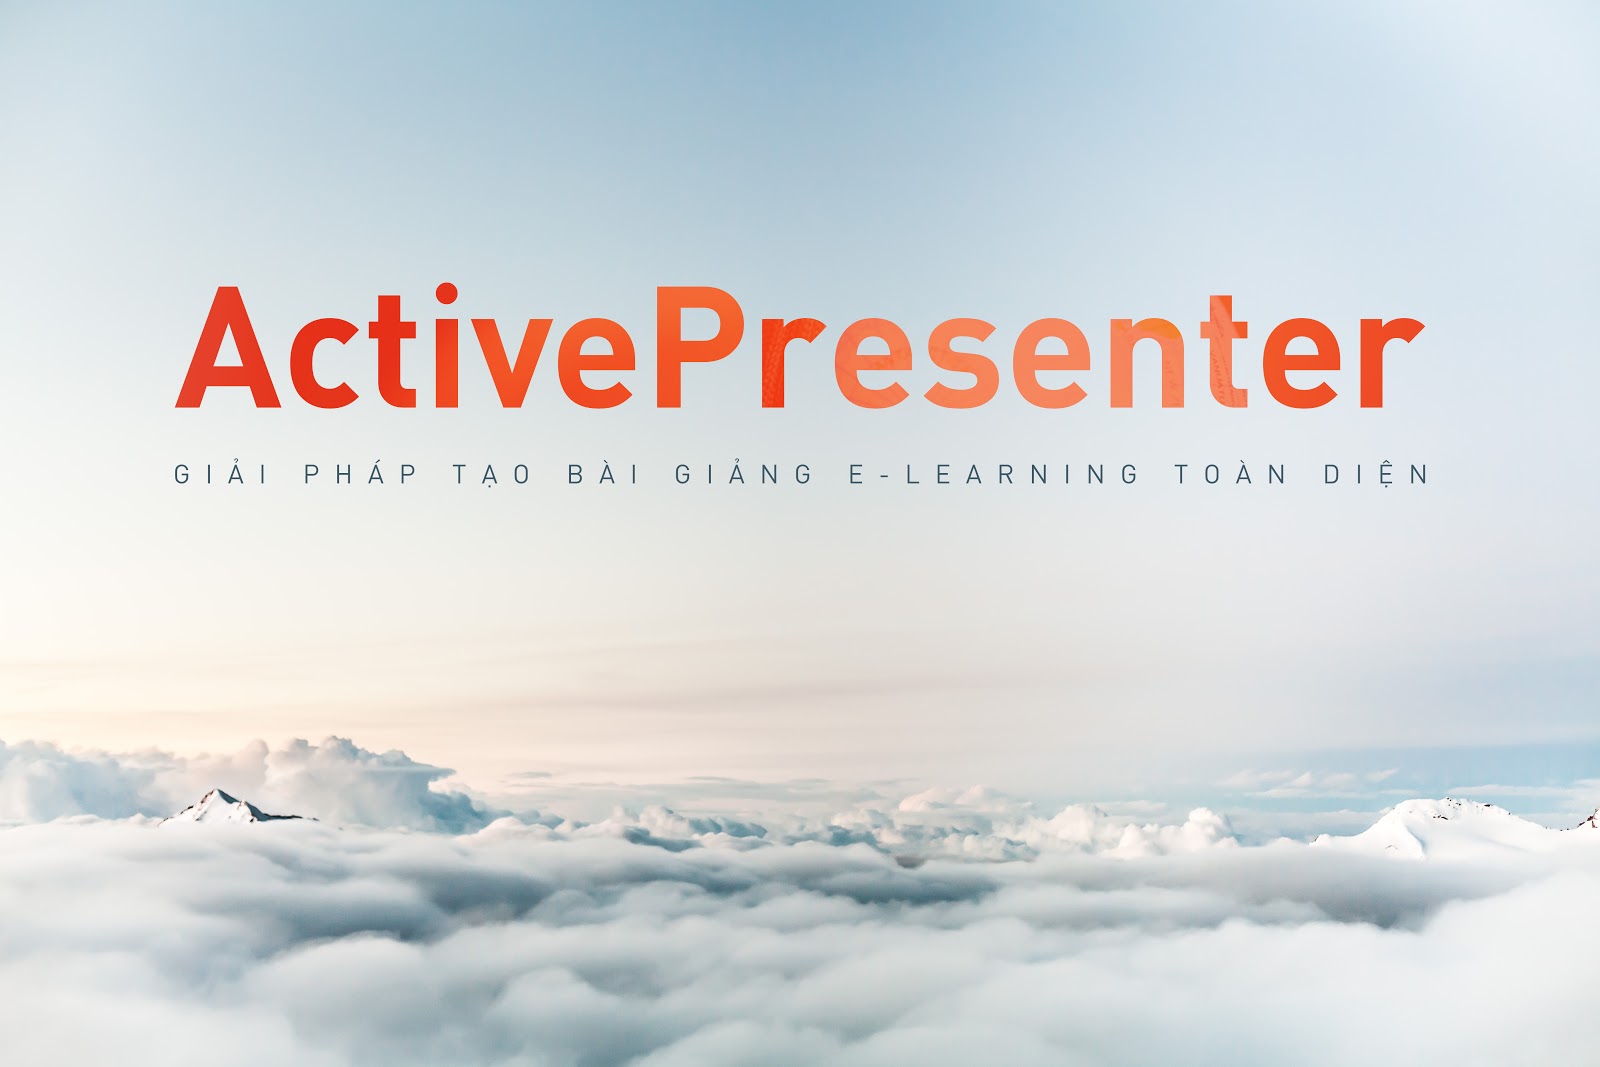 ActivePresenter - Giải pháp tạo bài giảng eLearning toàn diện